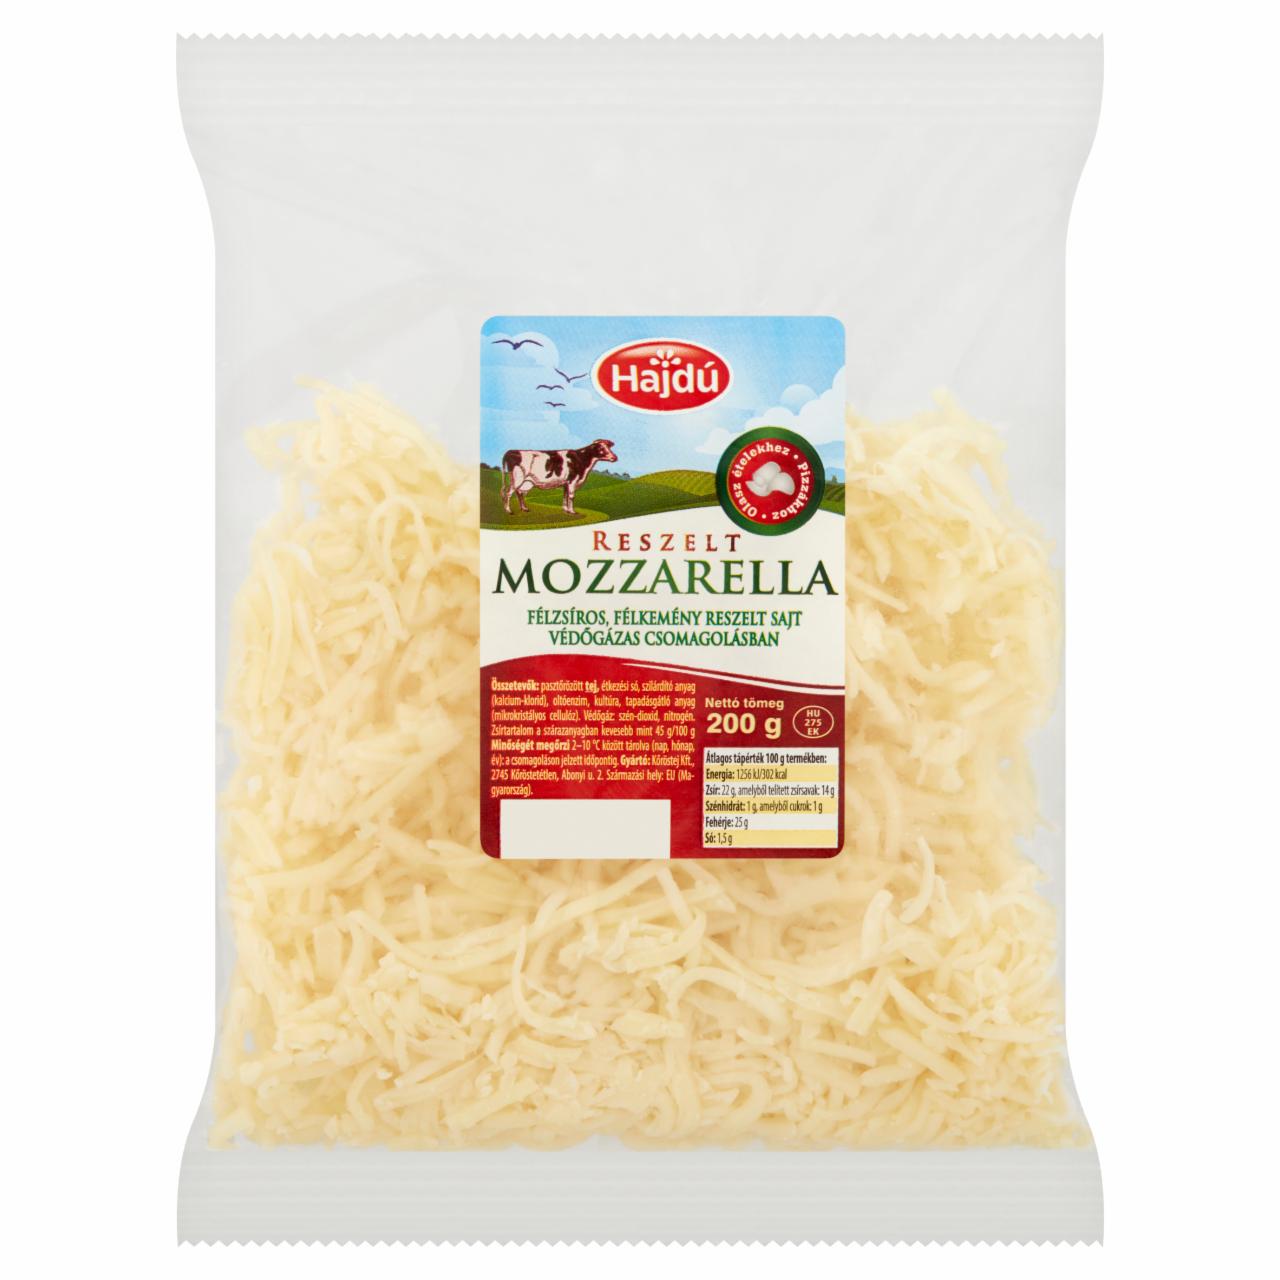 Képek - Hajdú félzsíros, félkemény reszelt mozzarella sajt 200 g